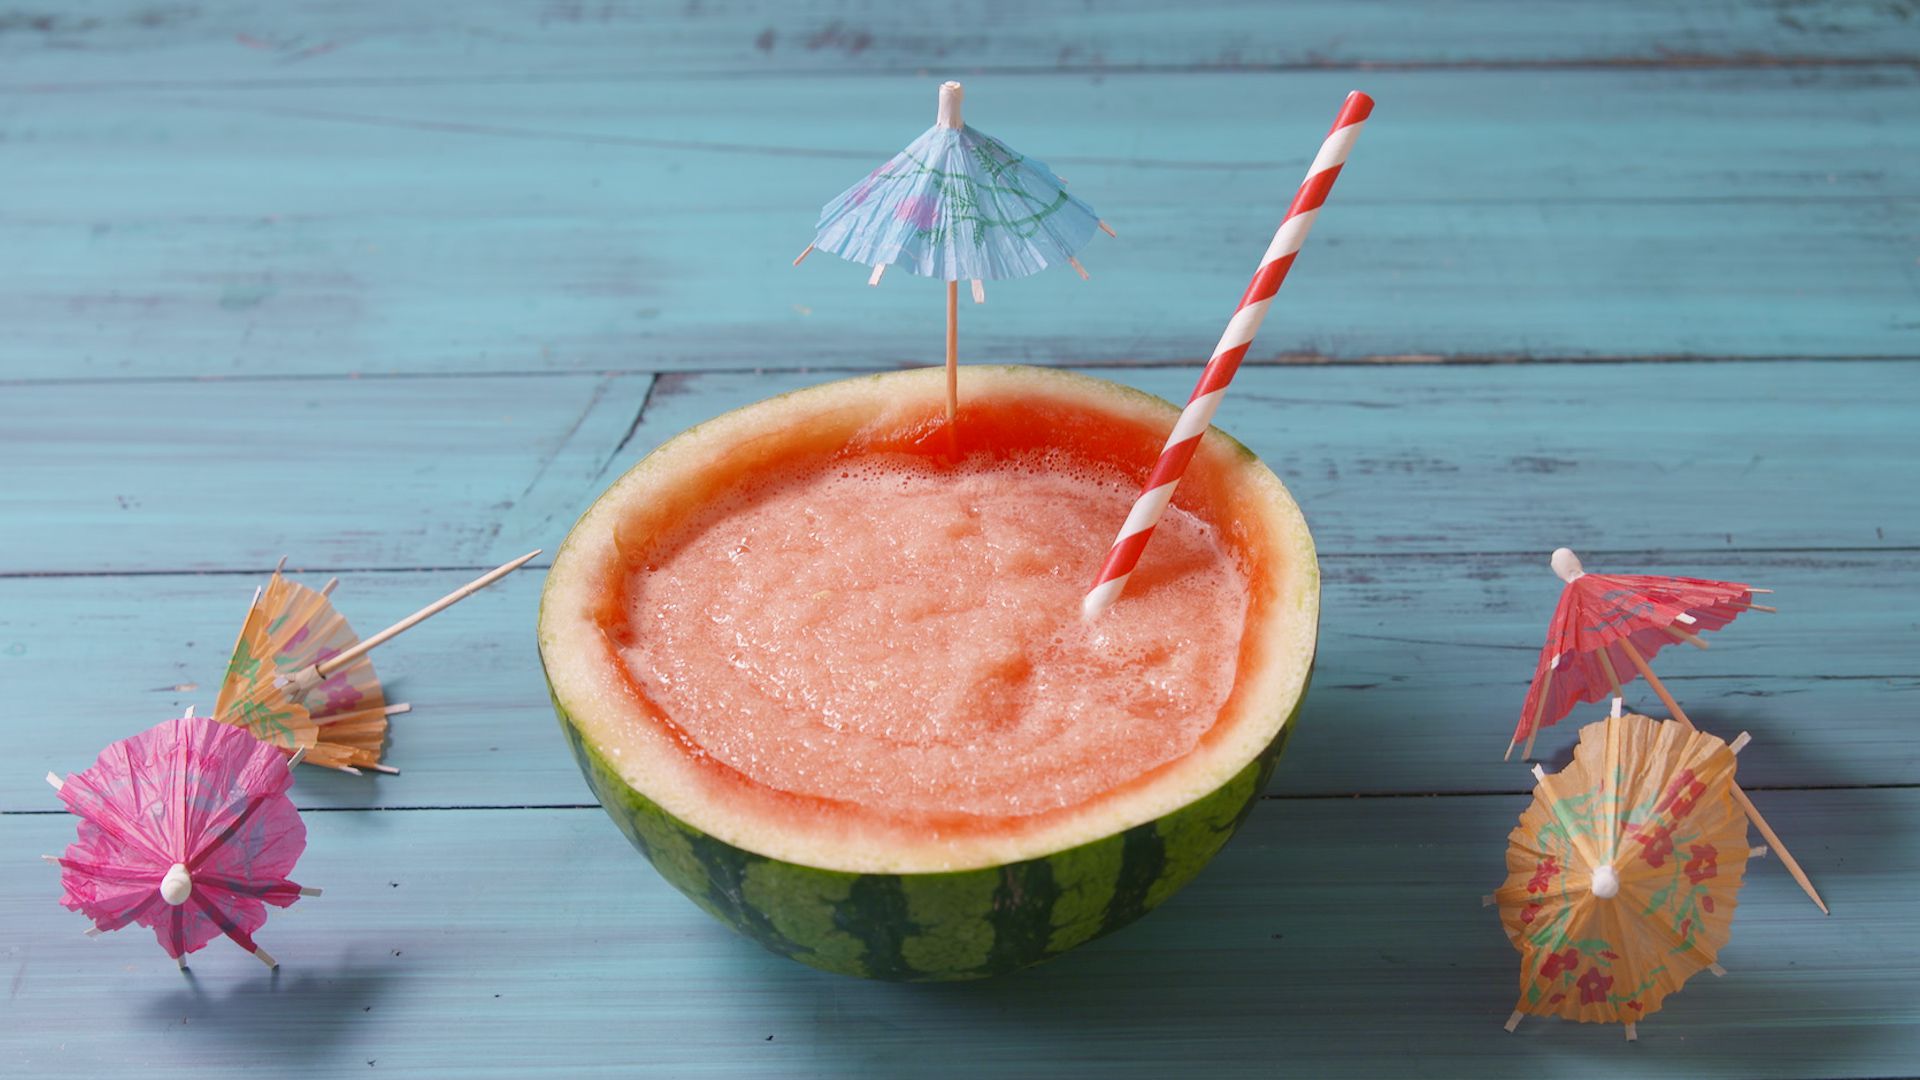 Best Boozy Watermelon Slushie Recipe - How To Make Boozy Watermelon ...